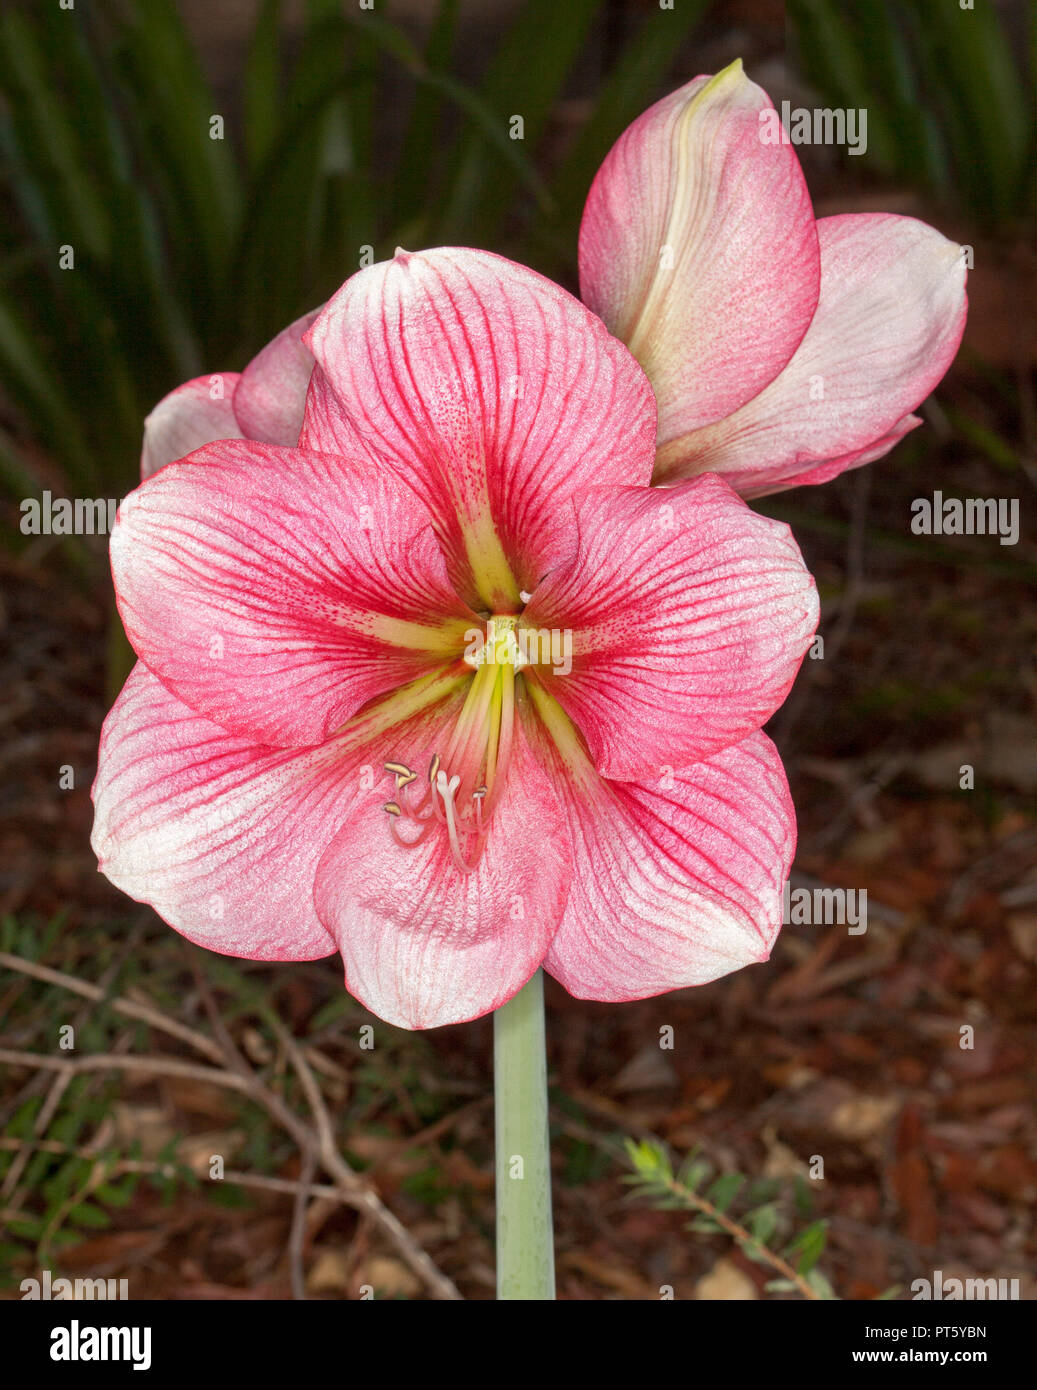 Grappe de grandes fleurs rose profond et spectaculaire de rayures blanches de l'Hippeastrum, ampoule de floraison du printemps, sur un fond sombre Banque D'Images